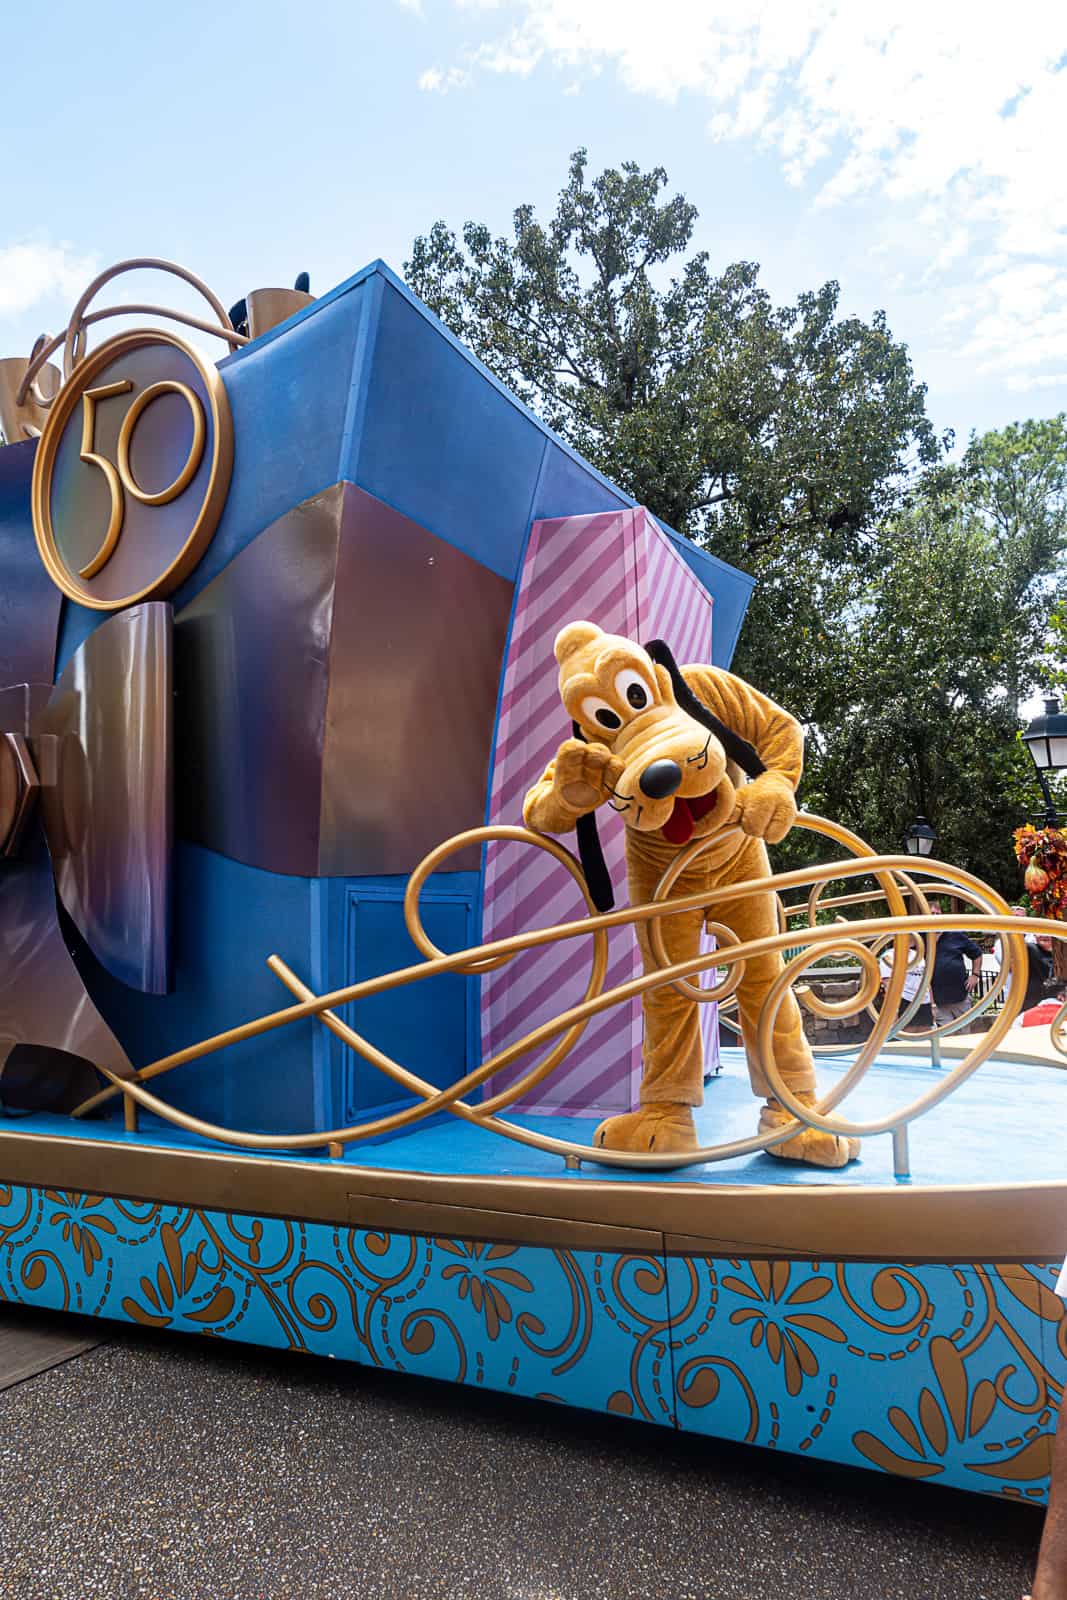 Disney World Parade Photo With Pluto at Magic Kingdom